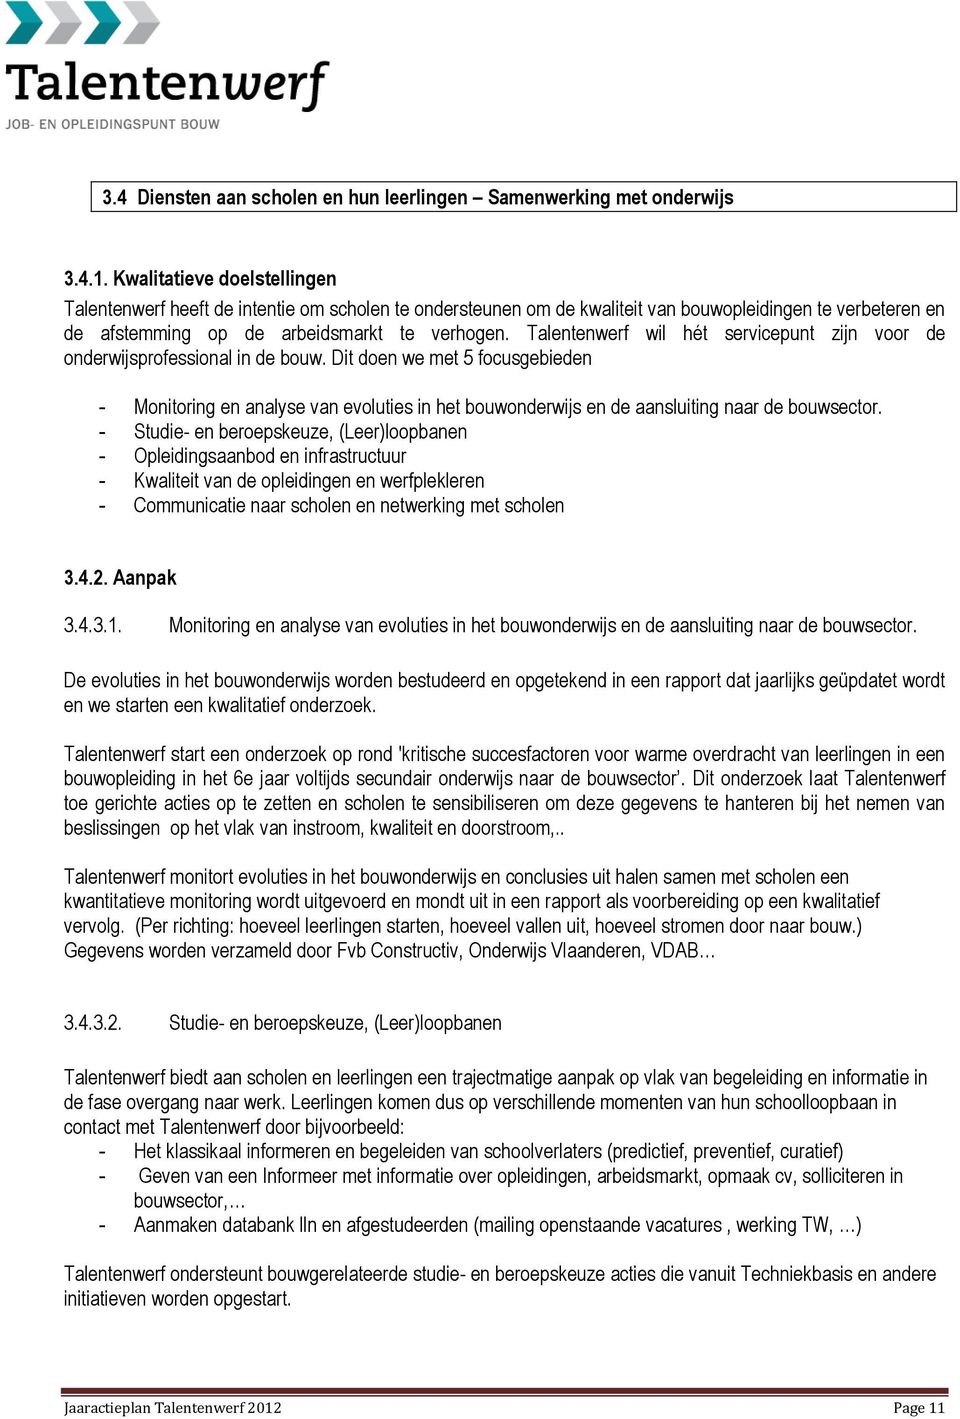 Talentenwerf wil hét servicepunt zijn voor de onderwijsprofessional in de bouw.